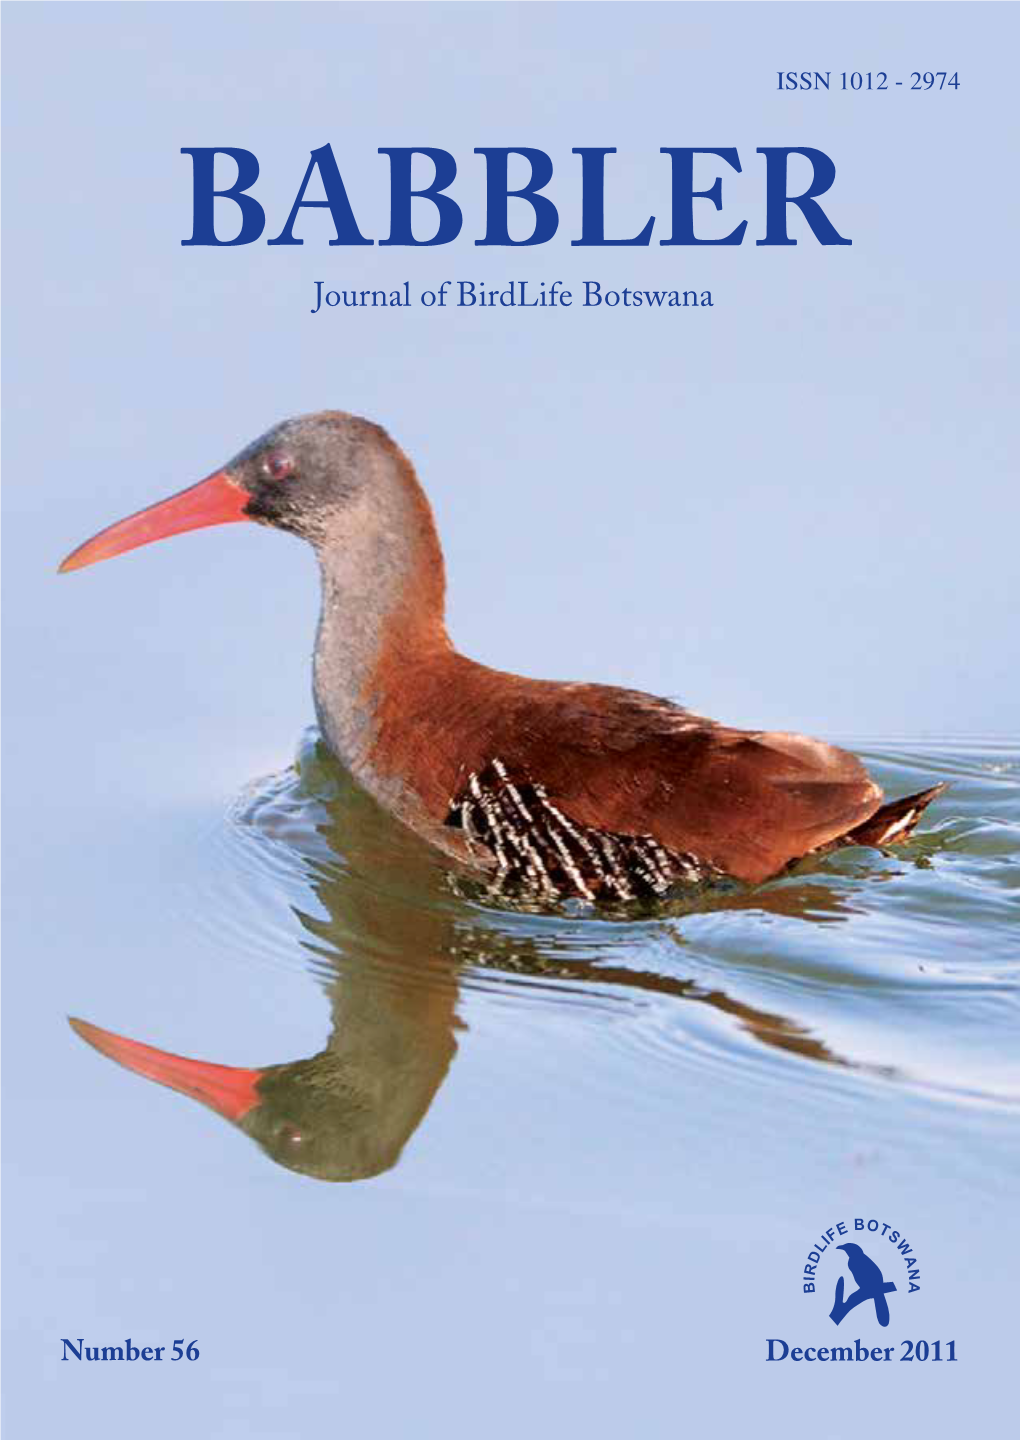 BABBLER Journal of Birdlife Botswana